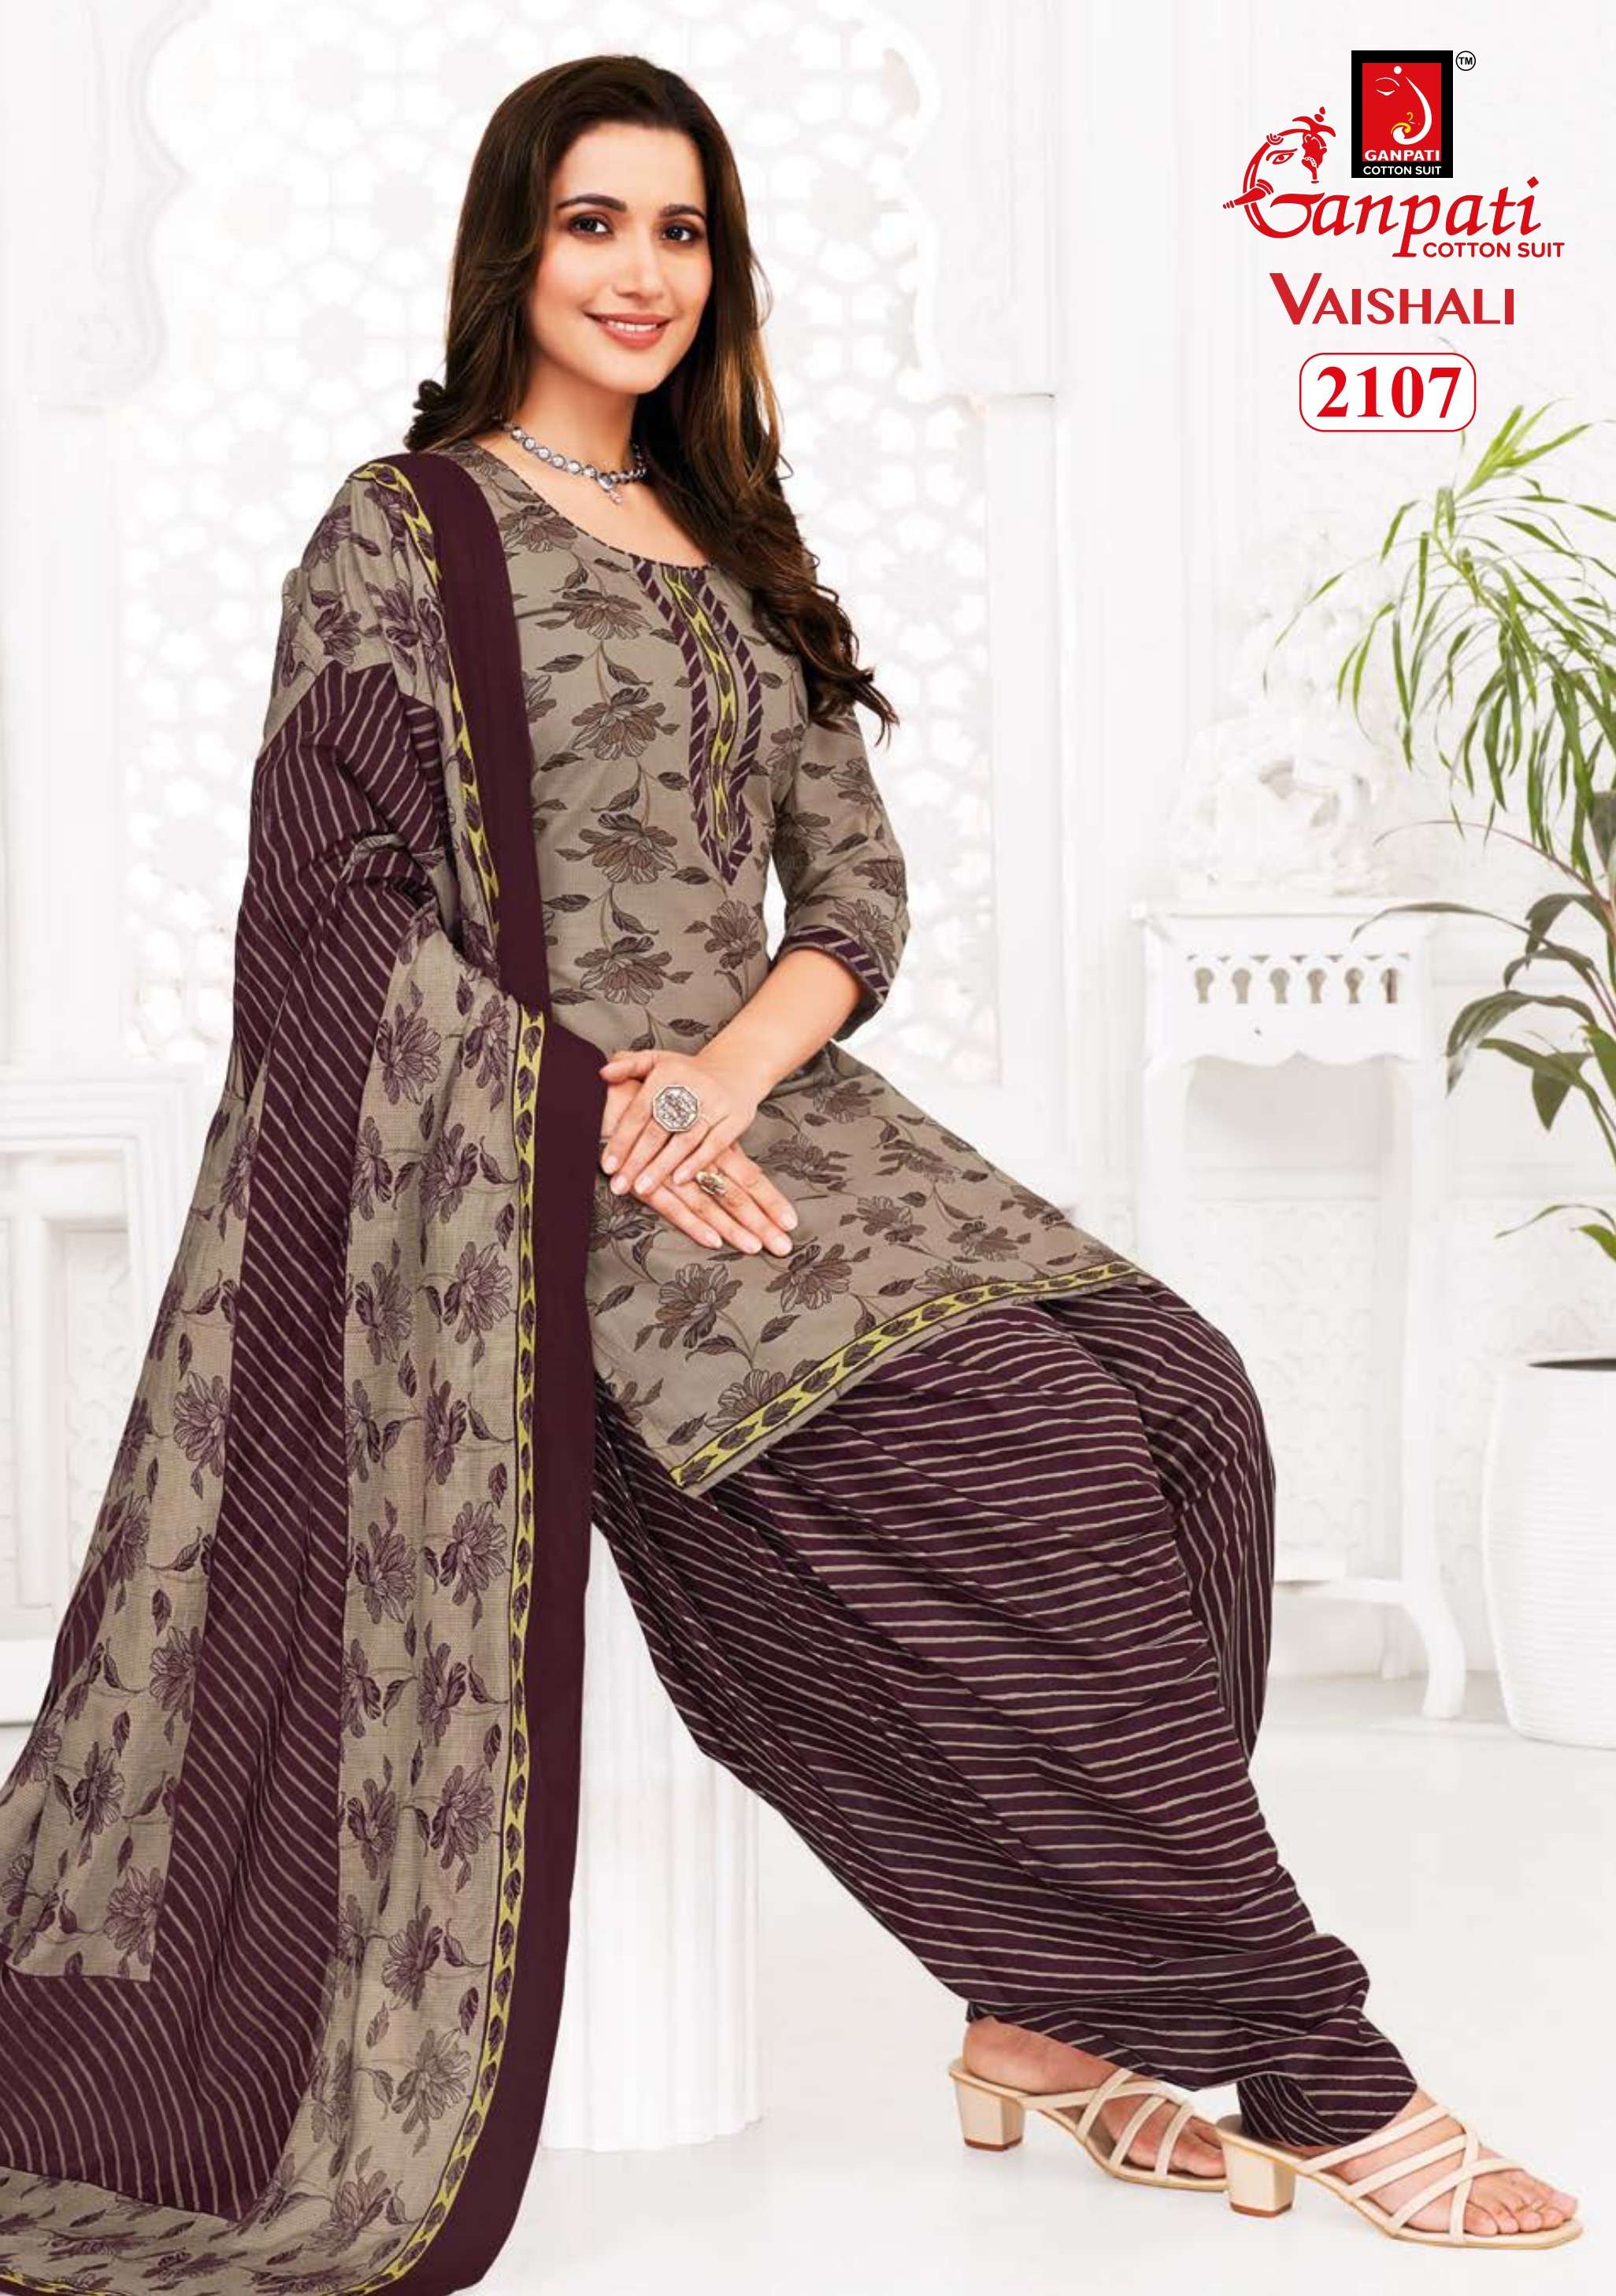 ganpati cotton suits vaishali patiyala vol-7 series patiyala cotton salwar kameez wholesaler surat gujarat